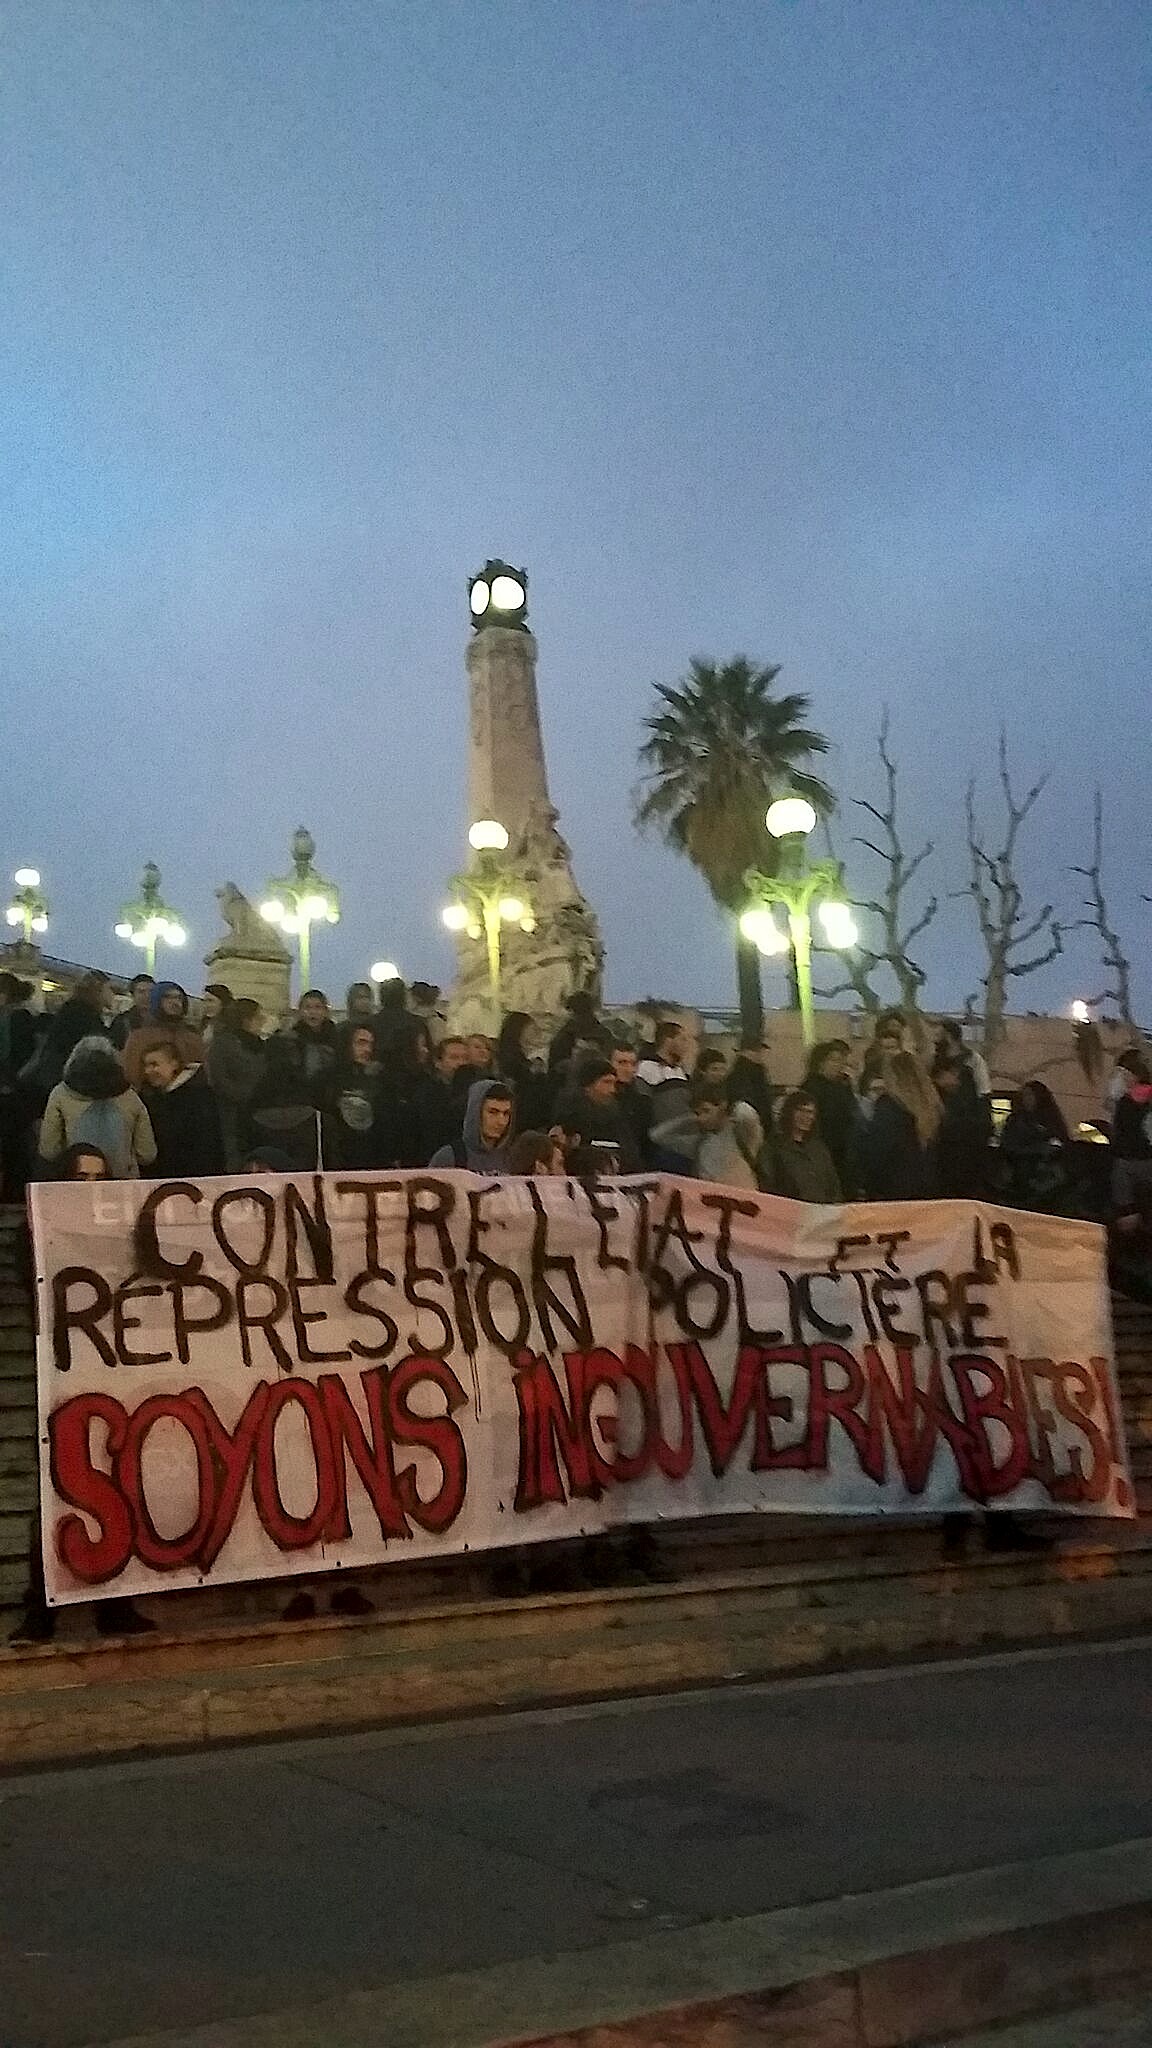 "Contre l'état et la répression policière, soyons ingouvernables" Marche Marseille 17/03/2017